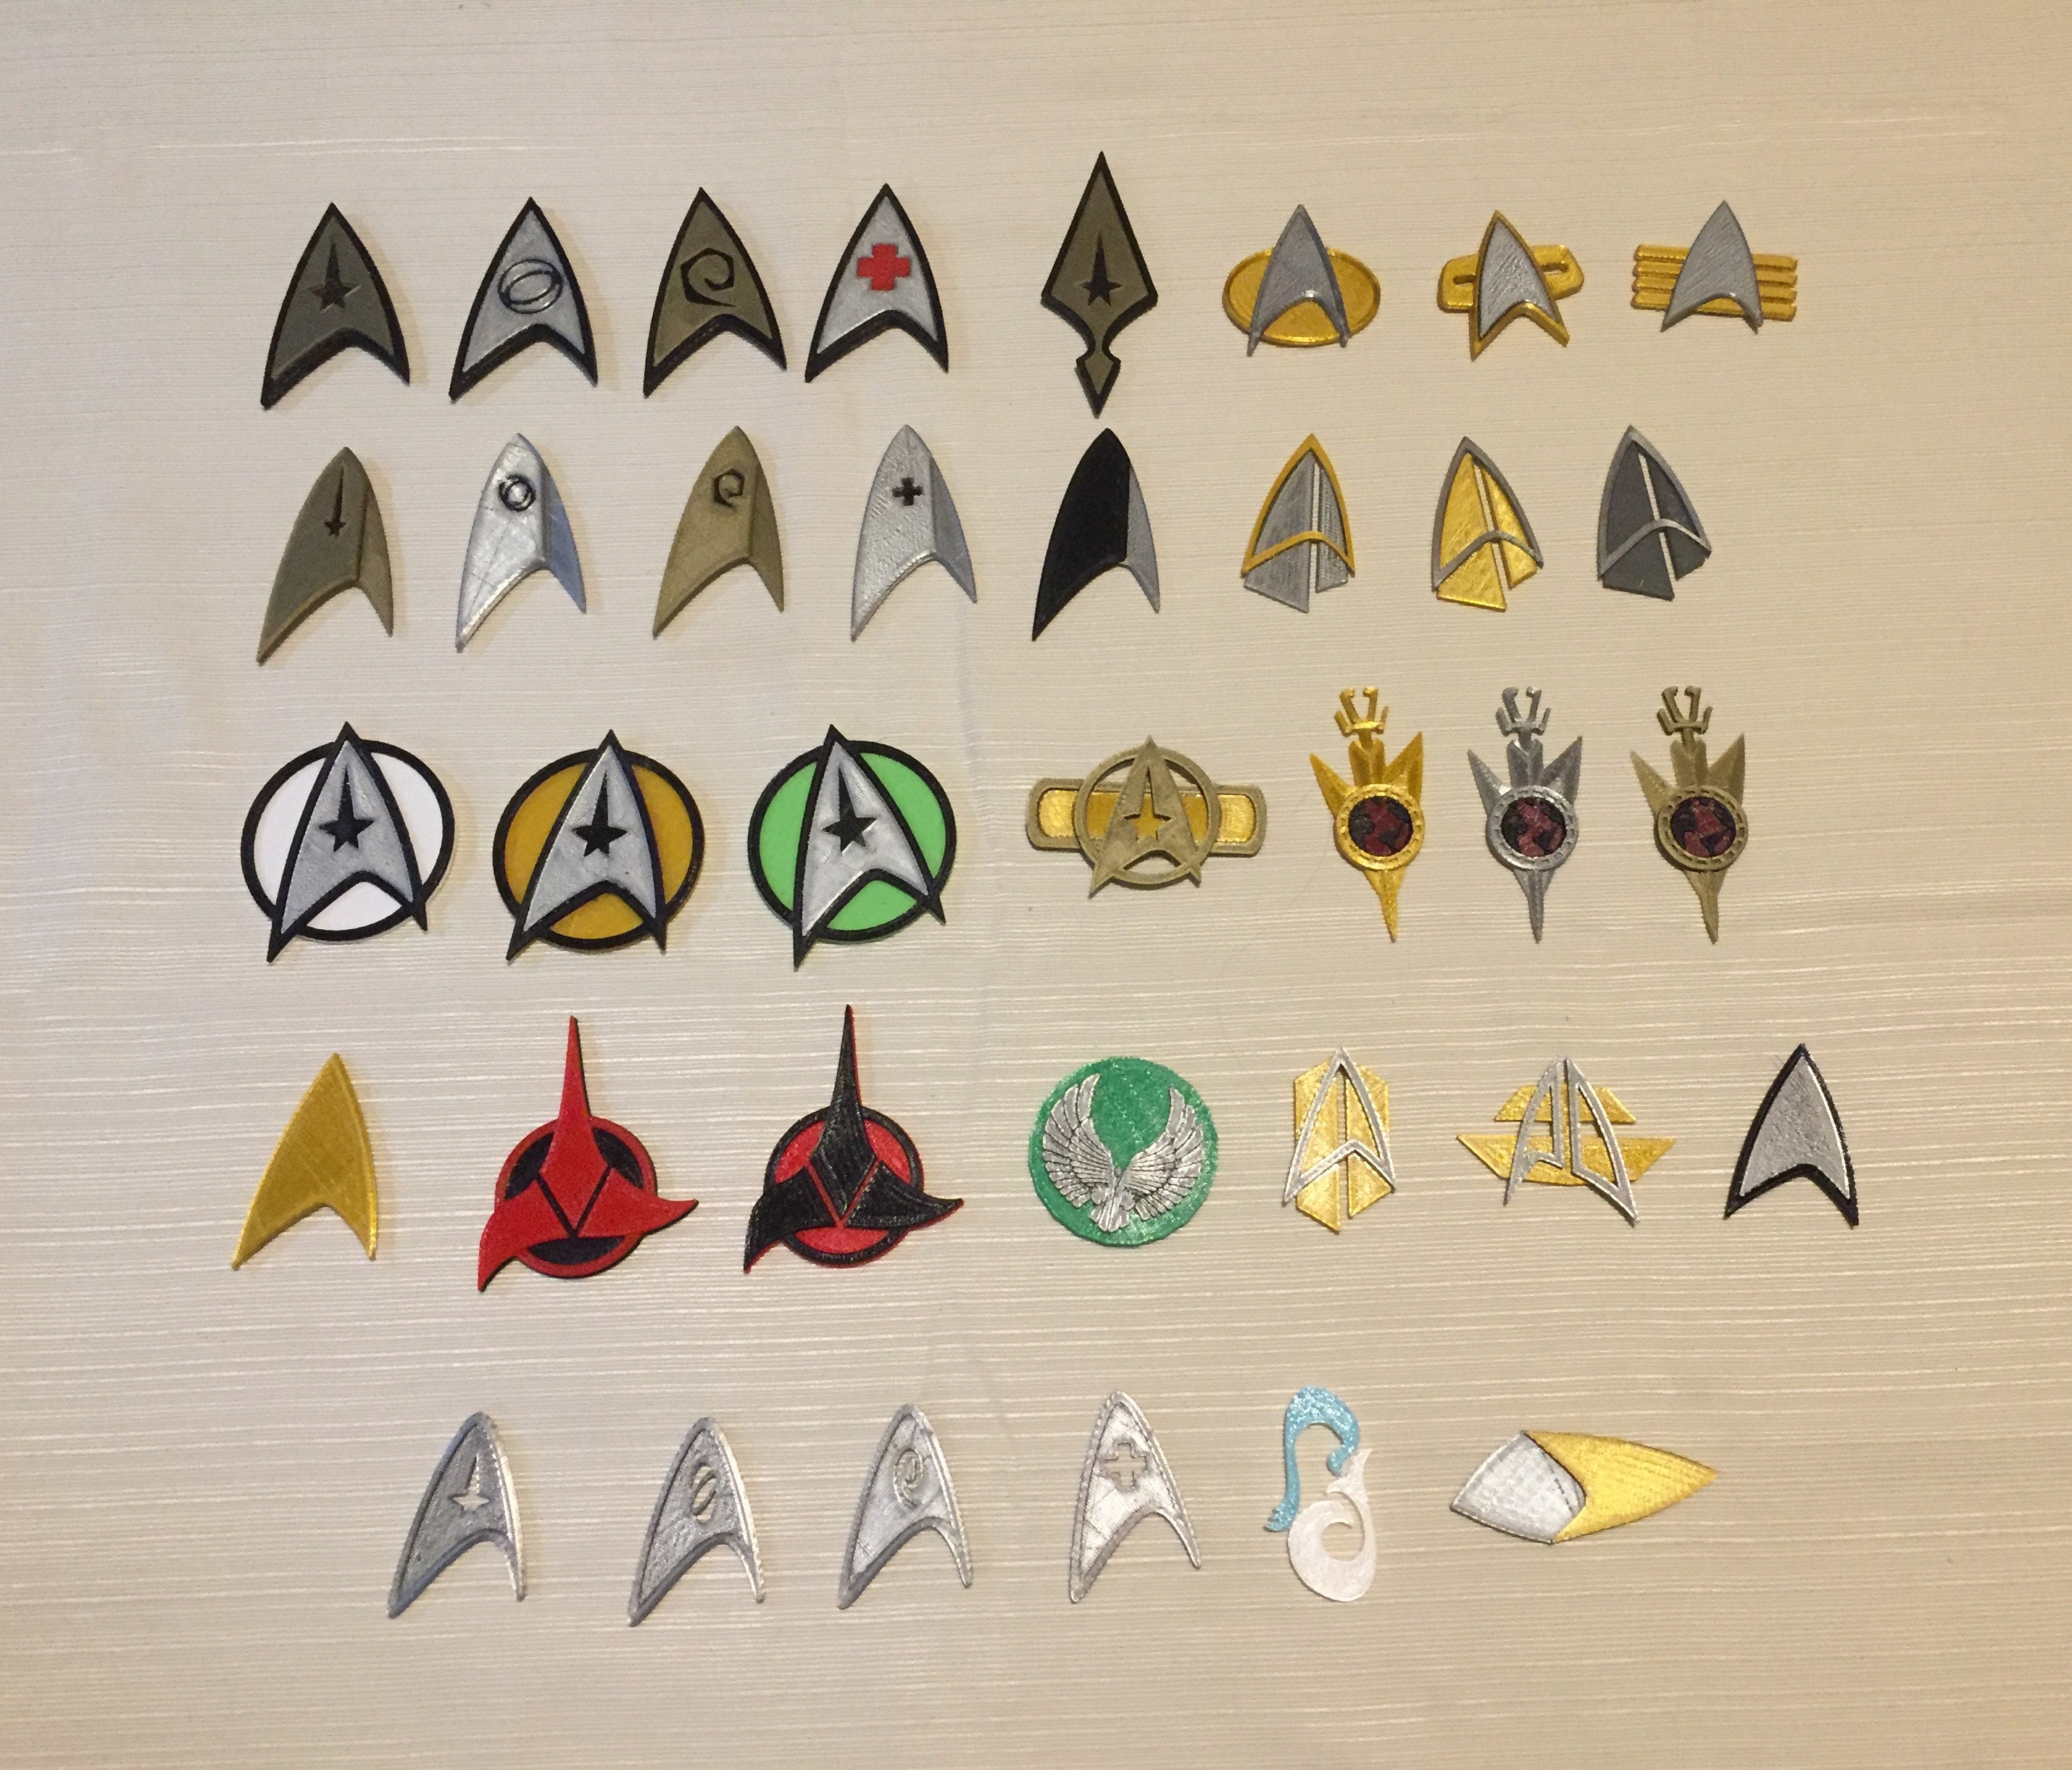 the star trek badges